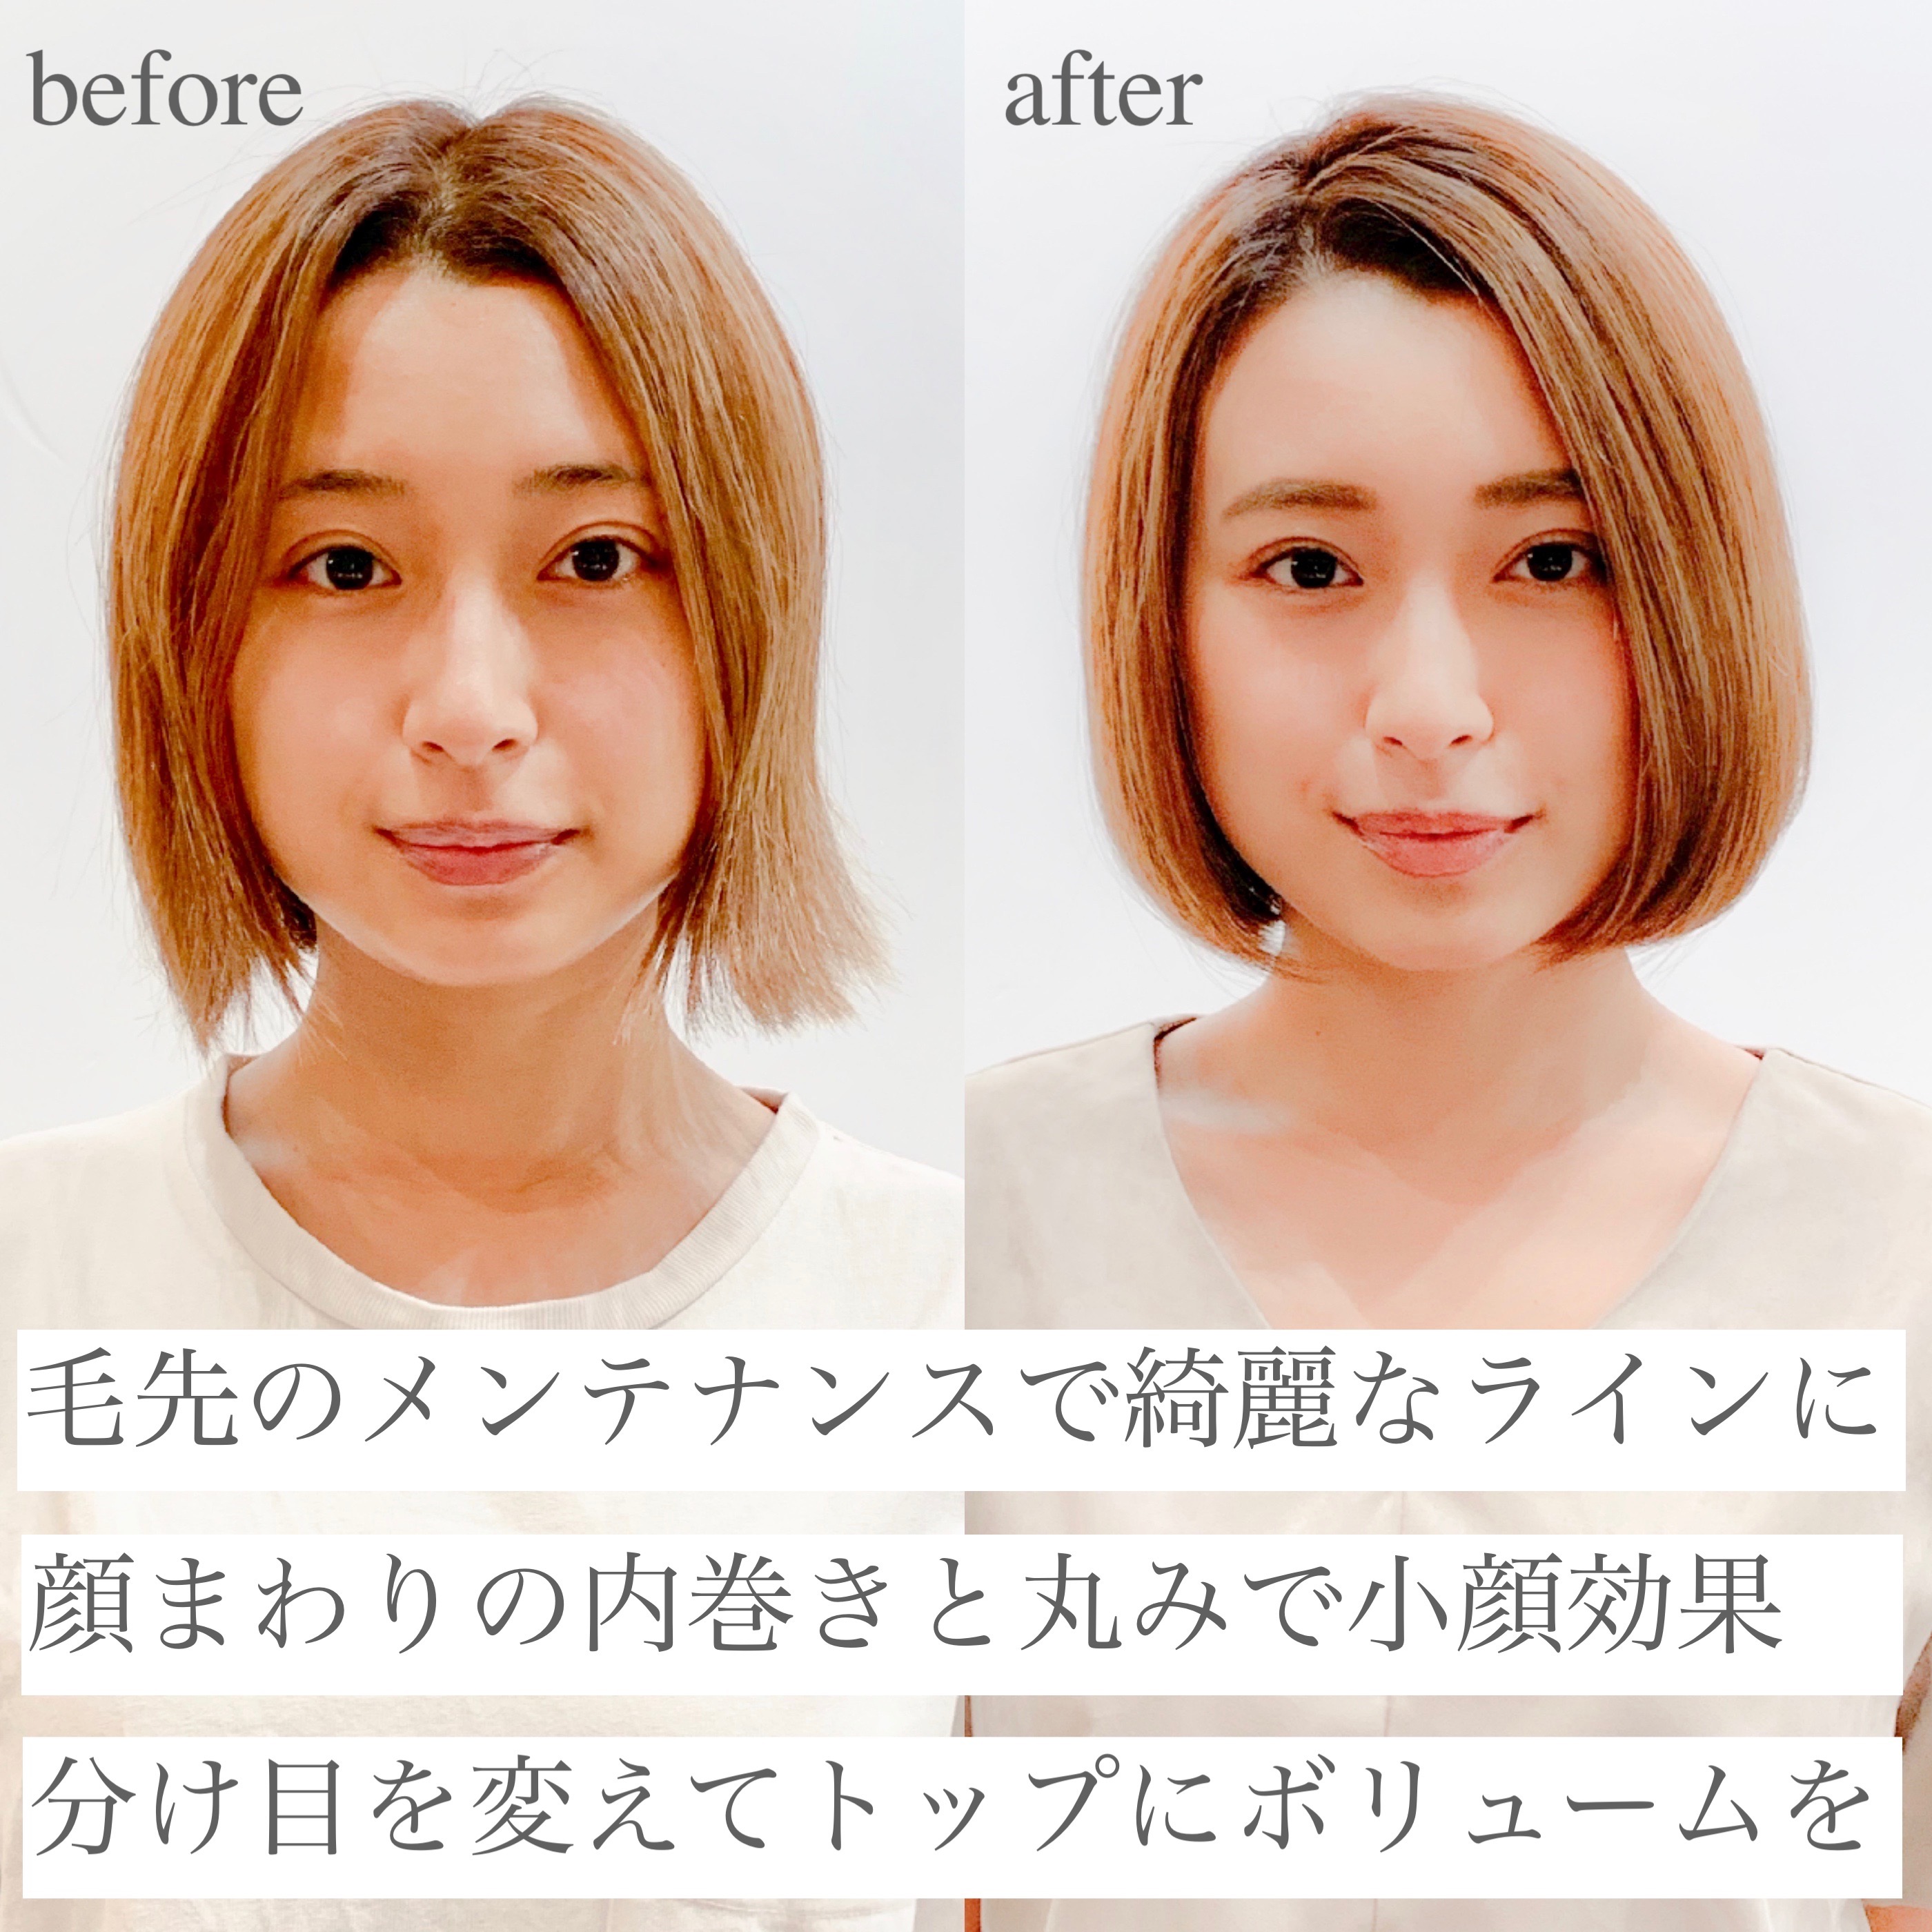 21年秋 大人ボブを 前髪あり 前髪なし の変化で 今の自分に似合う髪型に 似合わせカットが上手い東京の美容師 美容室minx銀座 蛭田のブログ